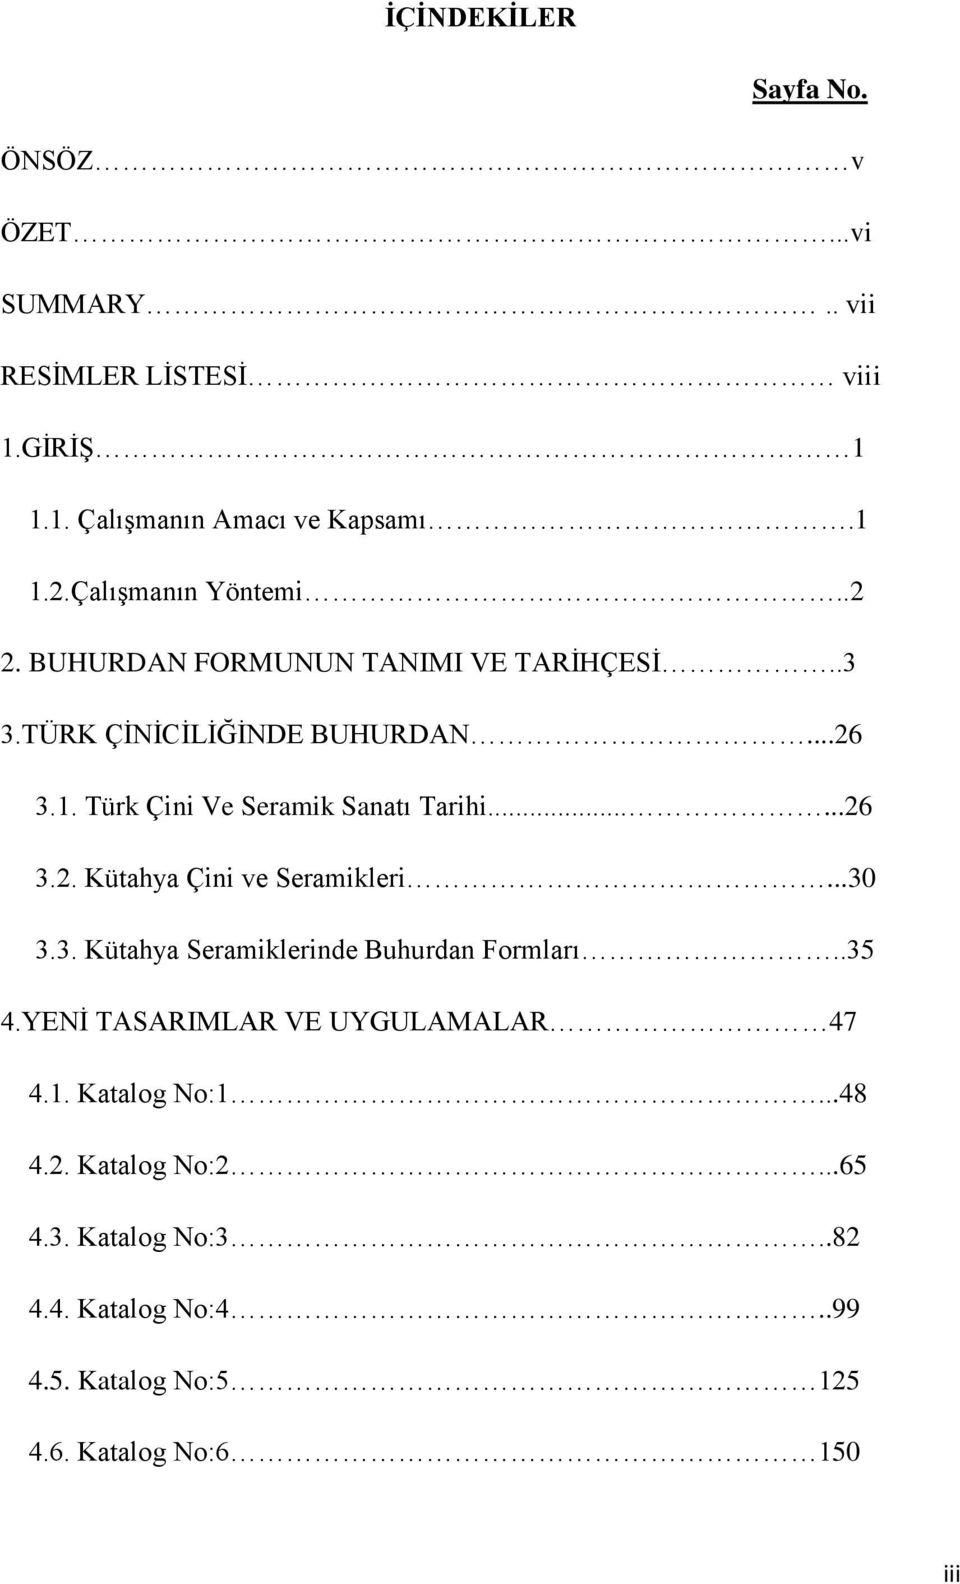 Türk Çini Ve Seramik Sanatı Tarihi......26 3.2. Kütahya Çini ve Seramikleri...30 3.3. Kütahya Seramiklerinde Buhurdan Formları..35 4.